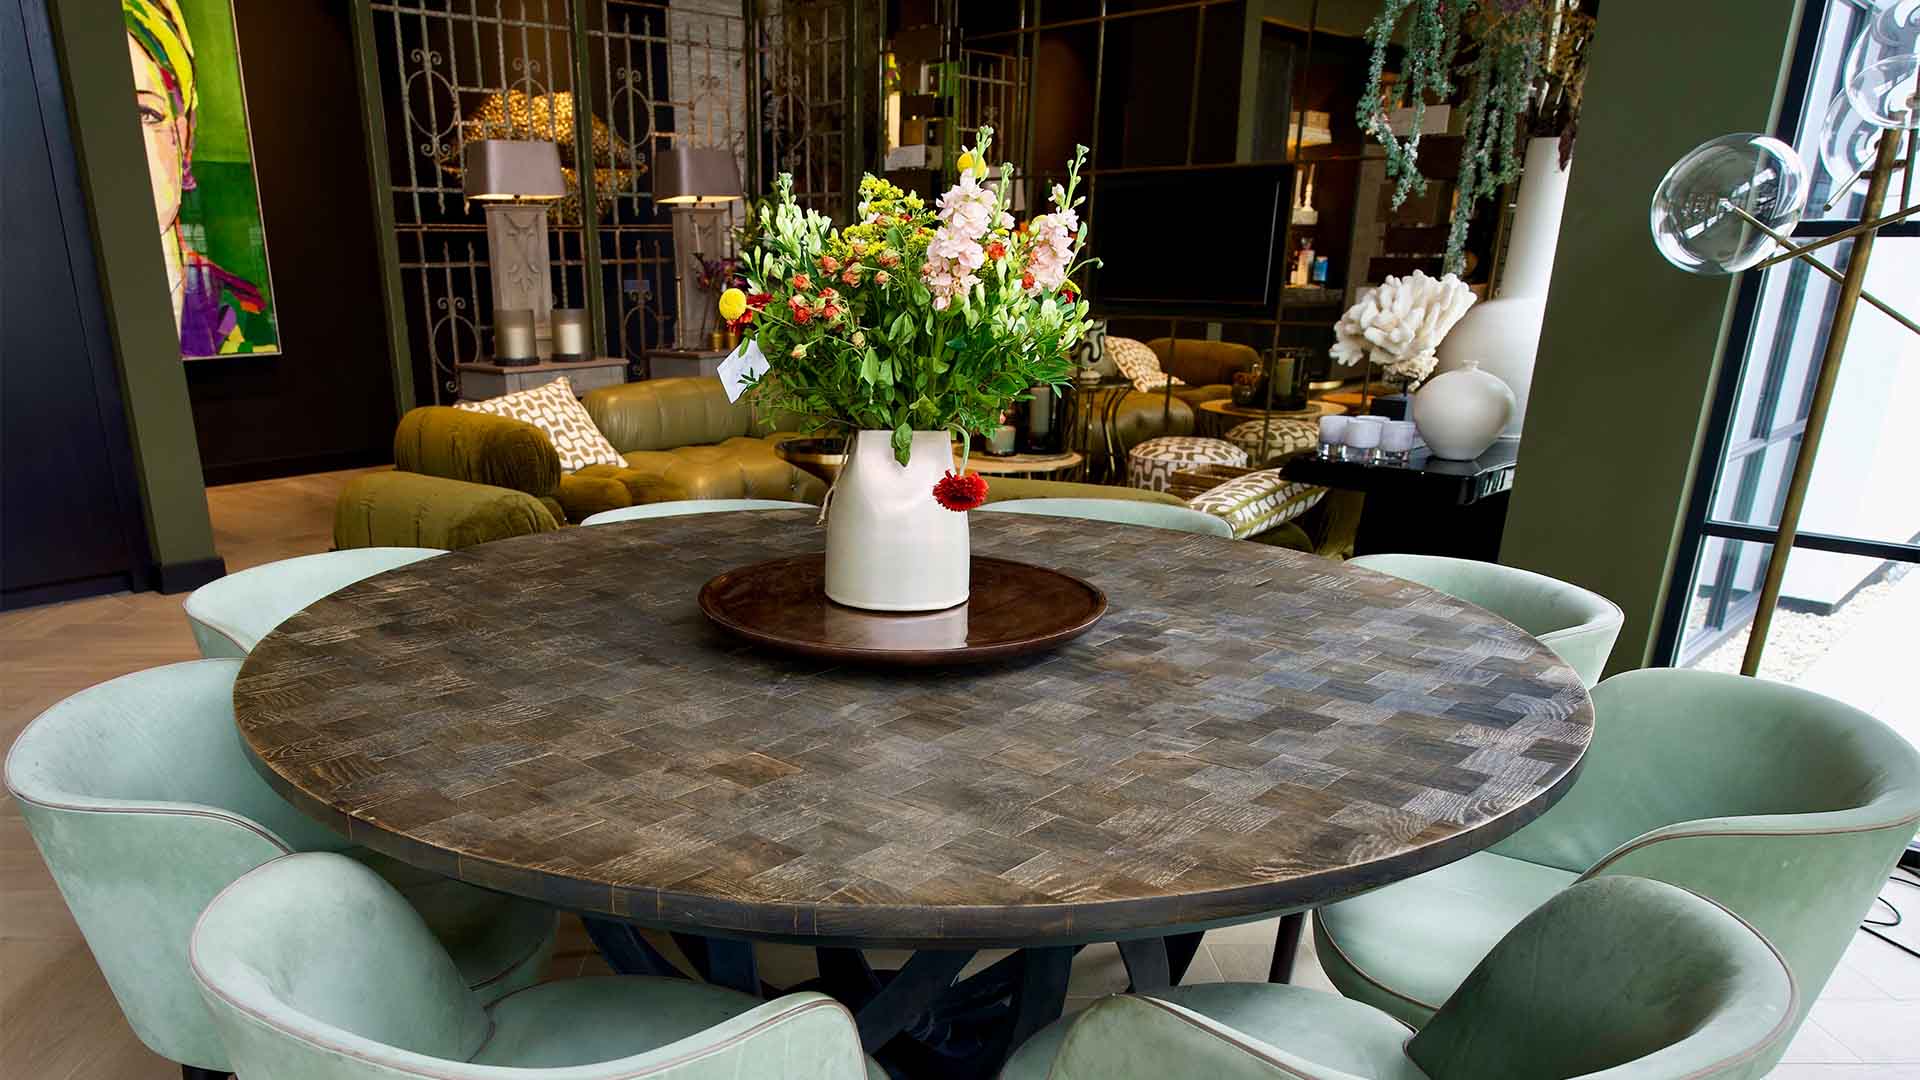 Maaskant meubel- en interieurbouw - wonen - villa - numansdorp - woonkamer - tafel - eetkamerstoelen